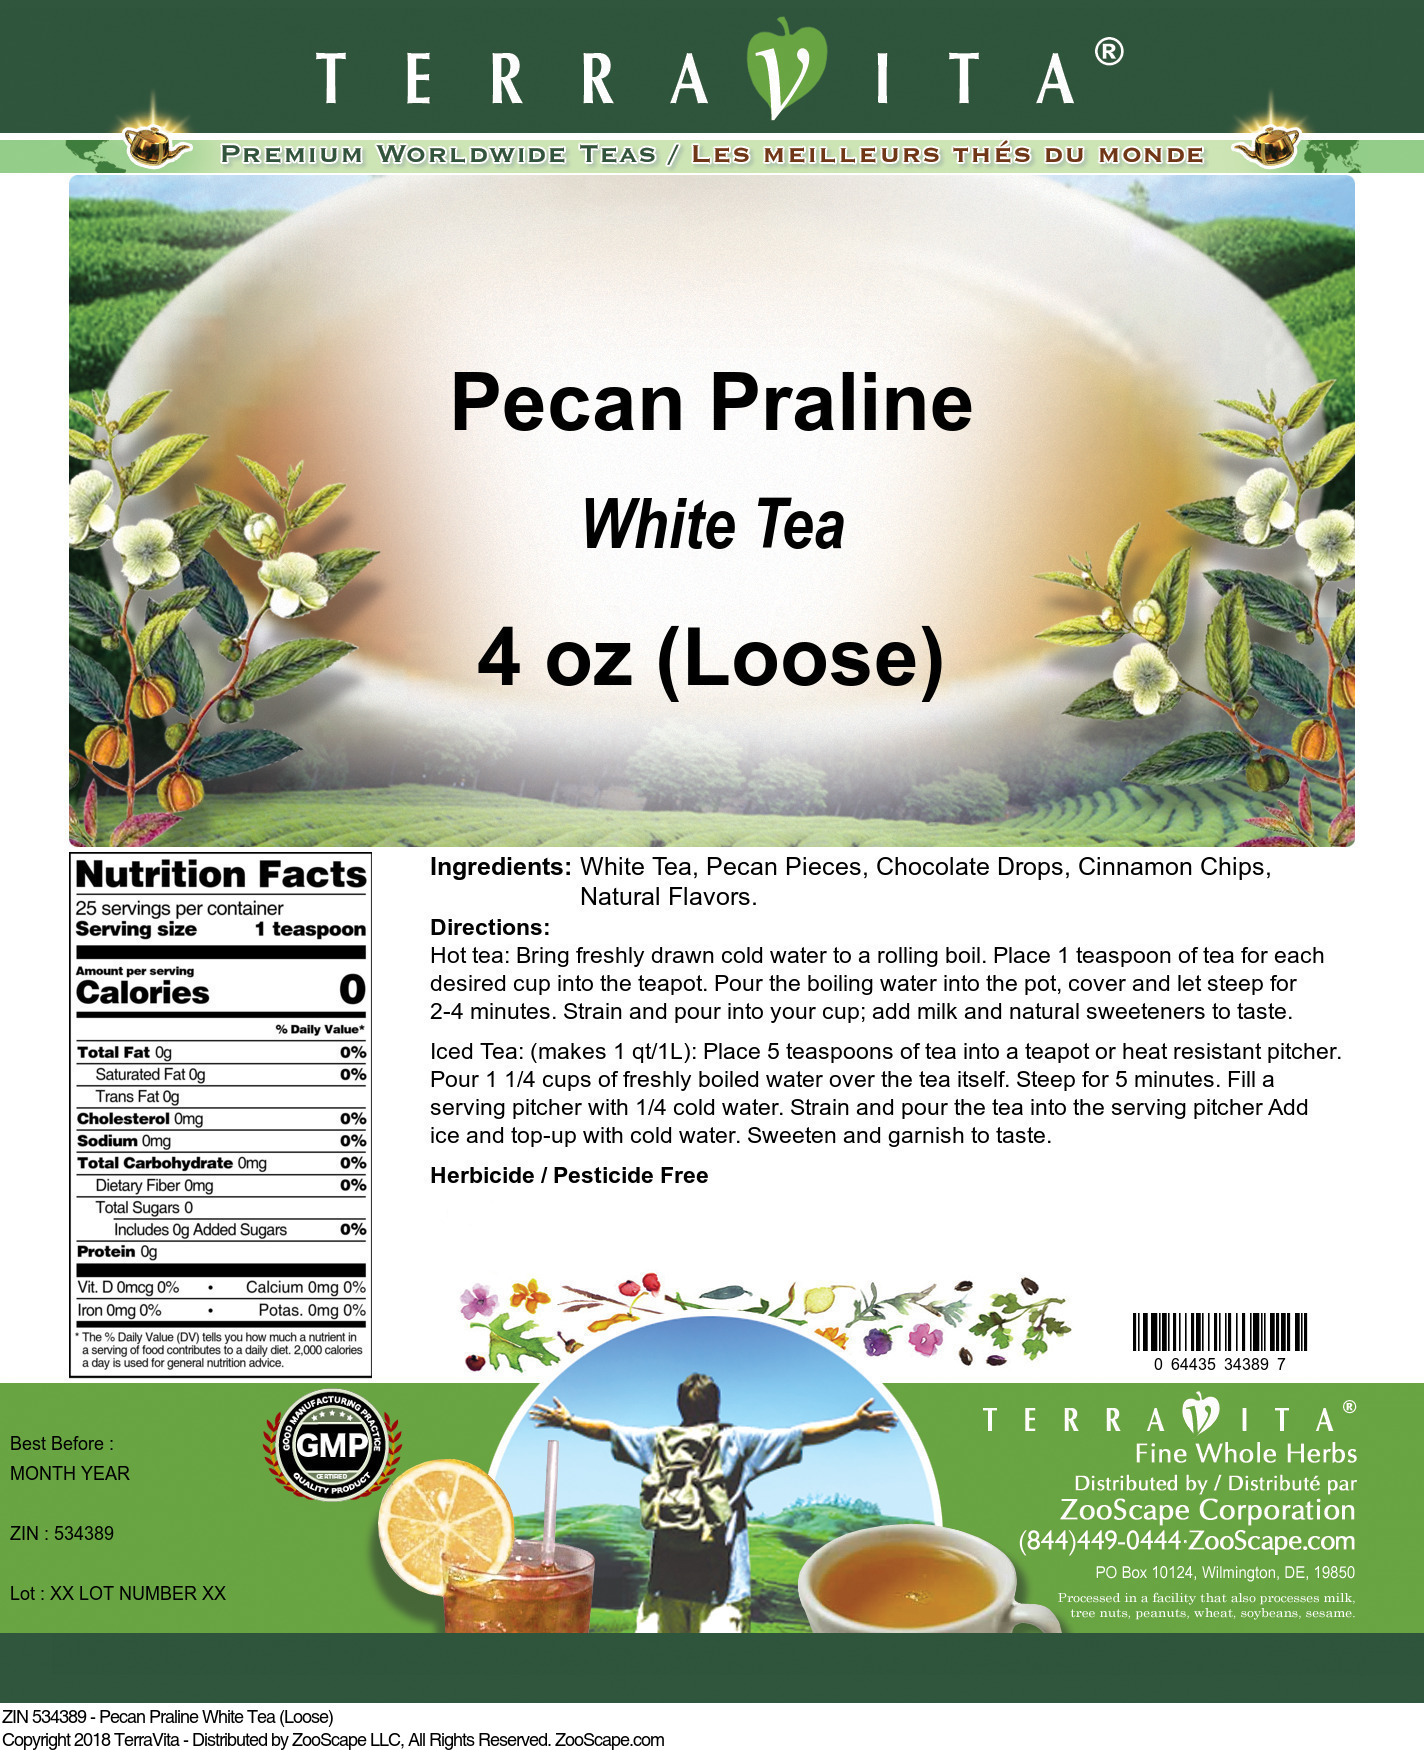 Pecan Praline White Tea (Loose) - Label